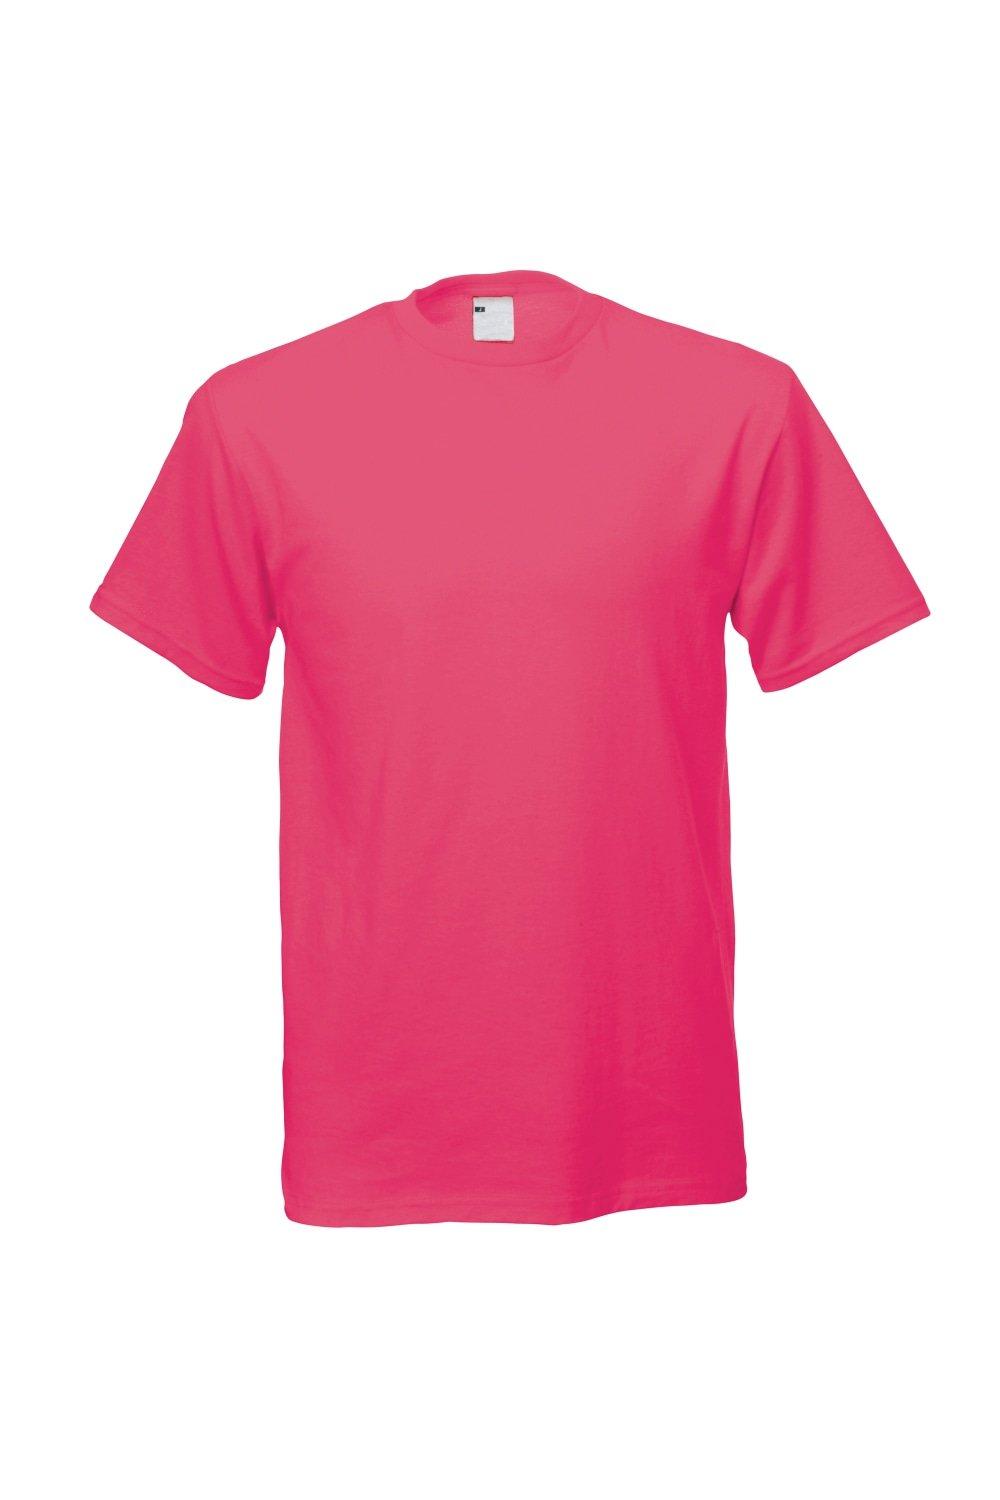 Повседневная футболка с коротким рукавом Universal Textiles, розовый мужская футболка котогороскоп кот овен 2xl серый меланж